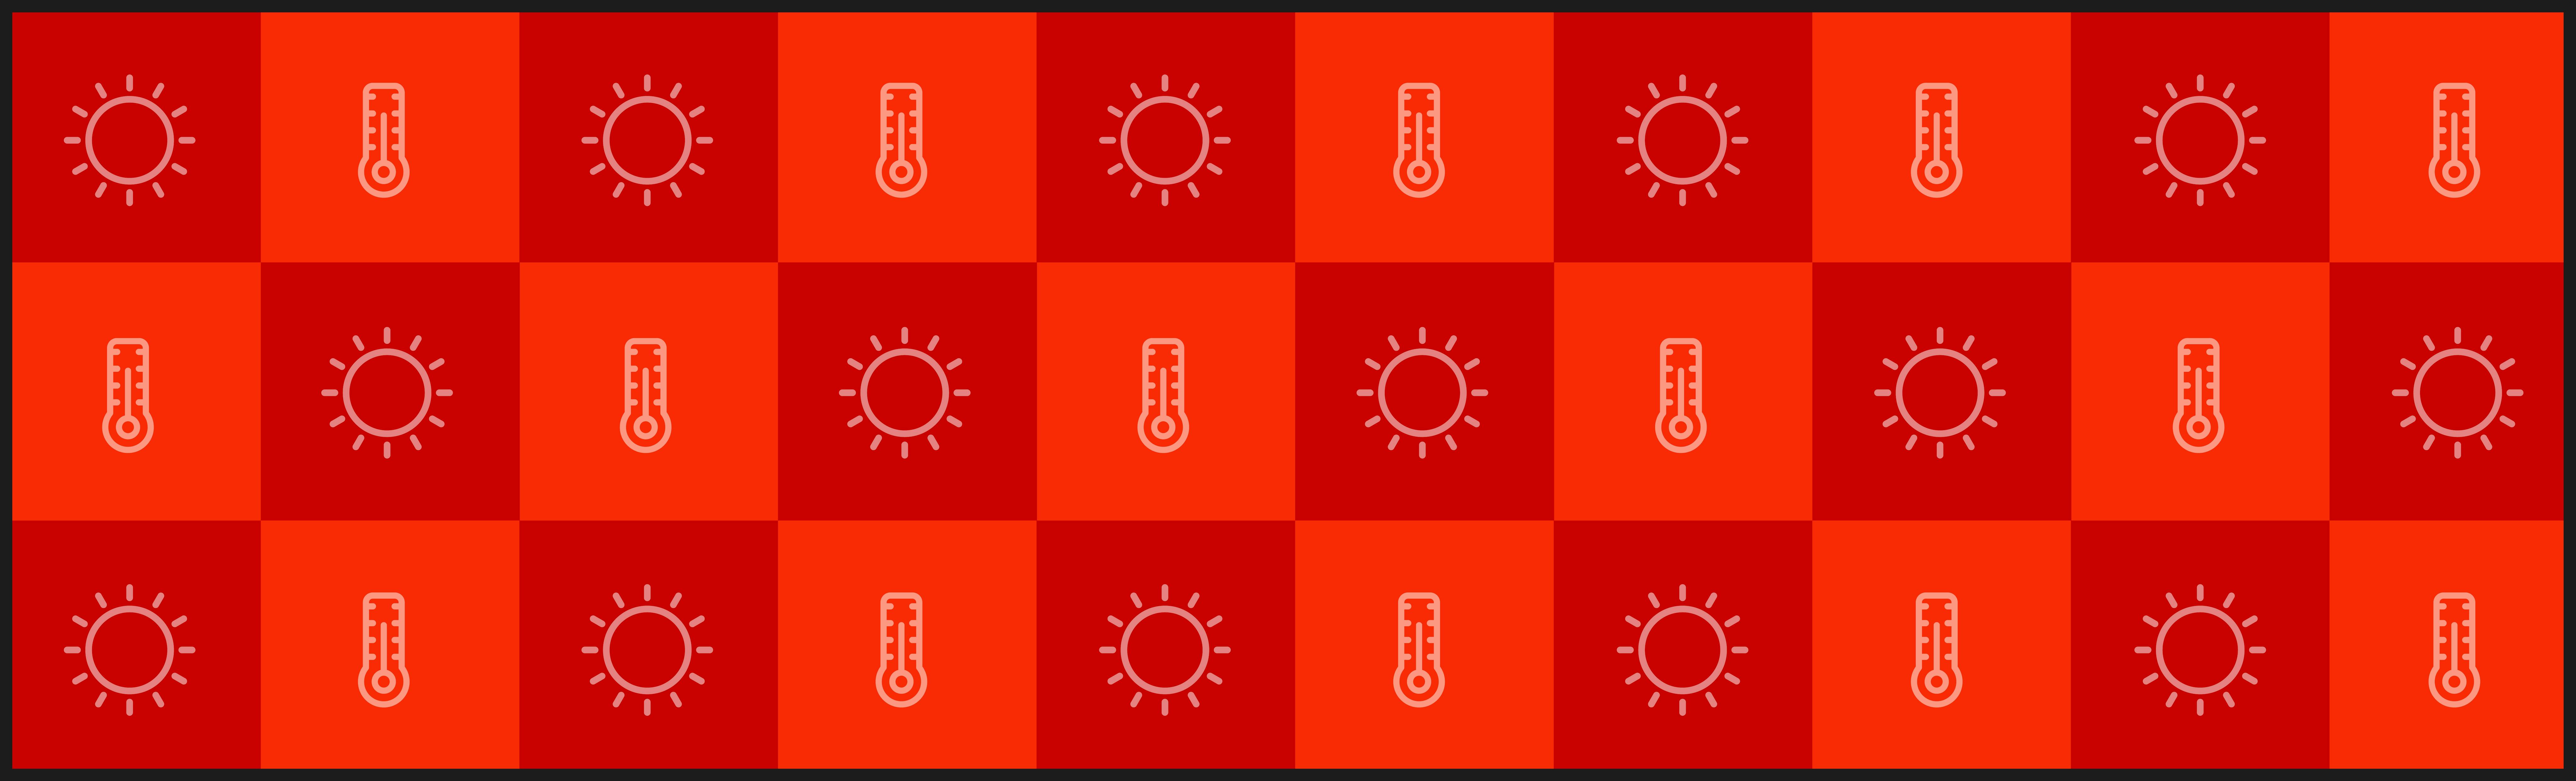 Heatwave icons